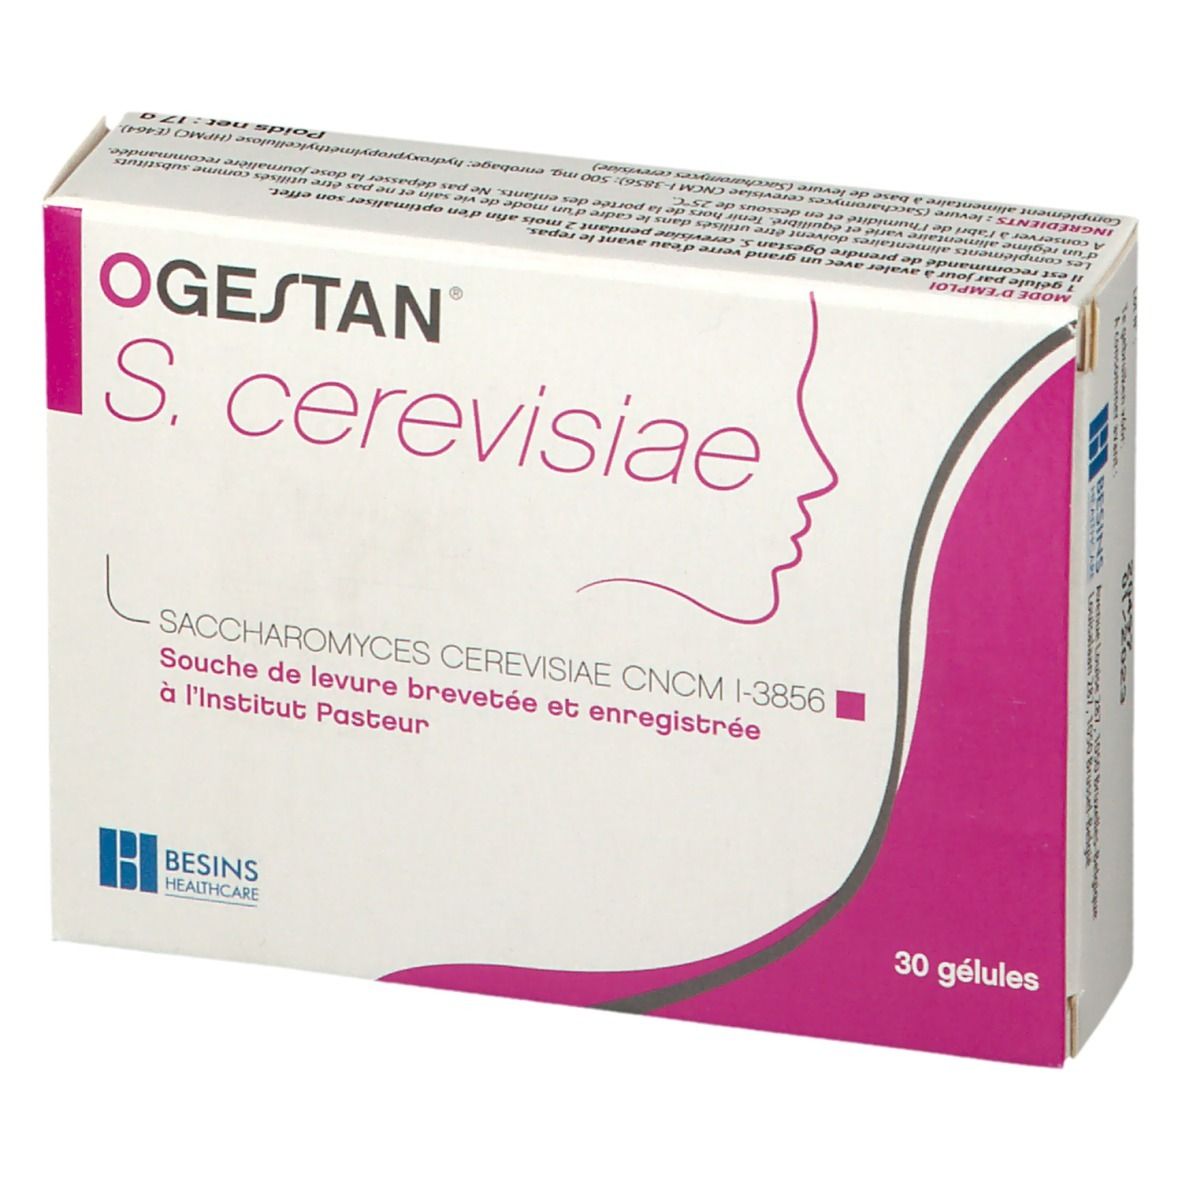 OGESTAN® S. cerevisiae